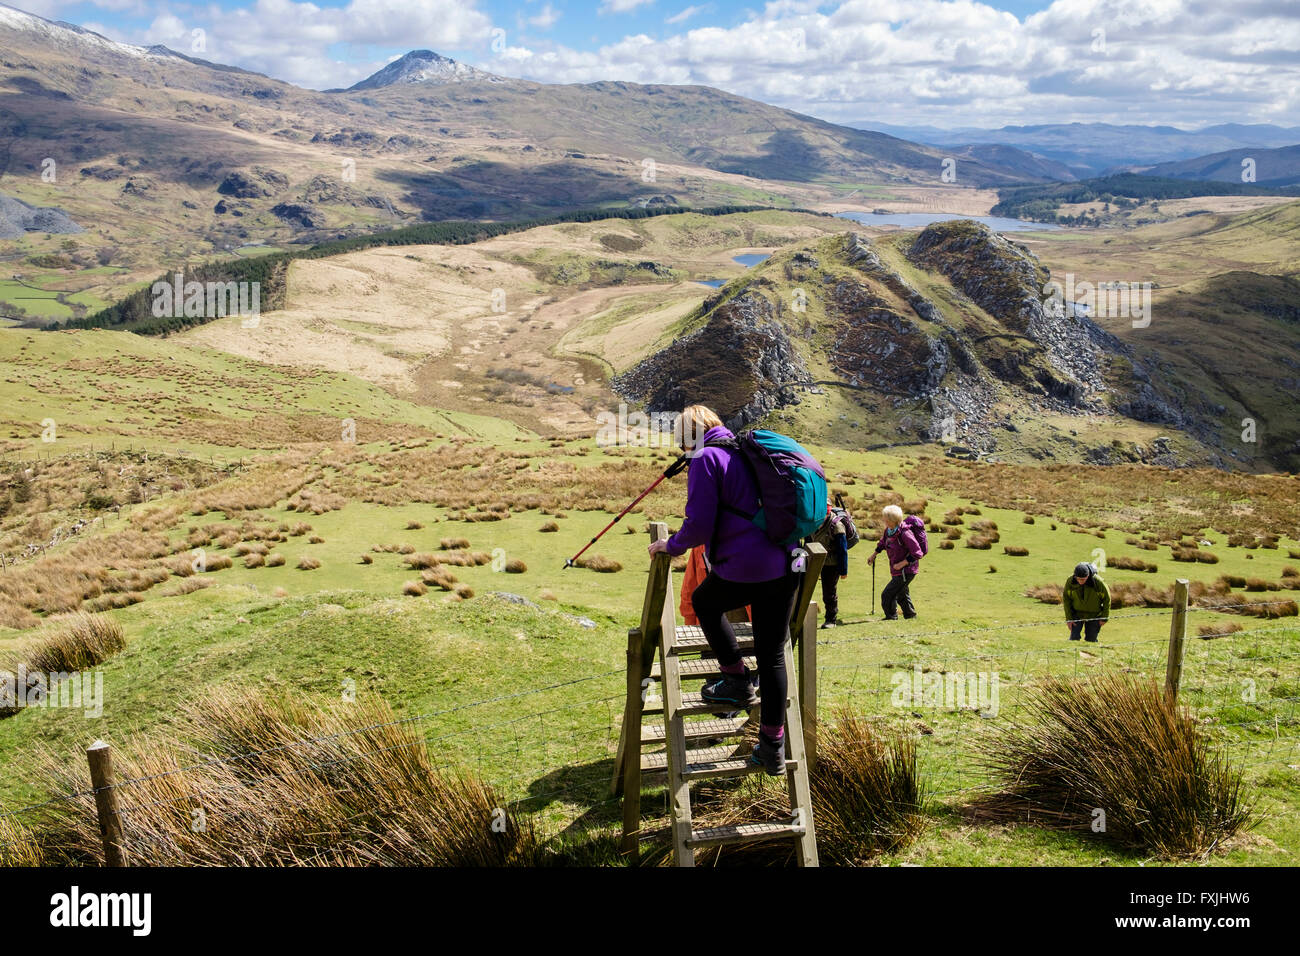 Female hiker monte en arrière vers le bas de l'échelle sur un sentier montant chemin jusqu'Mynydd Mawr dans le parc national de Snowdonia. Pays de Galles UK Rhyd Ddu Banque D'Images